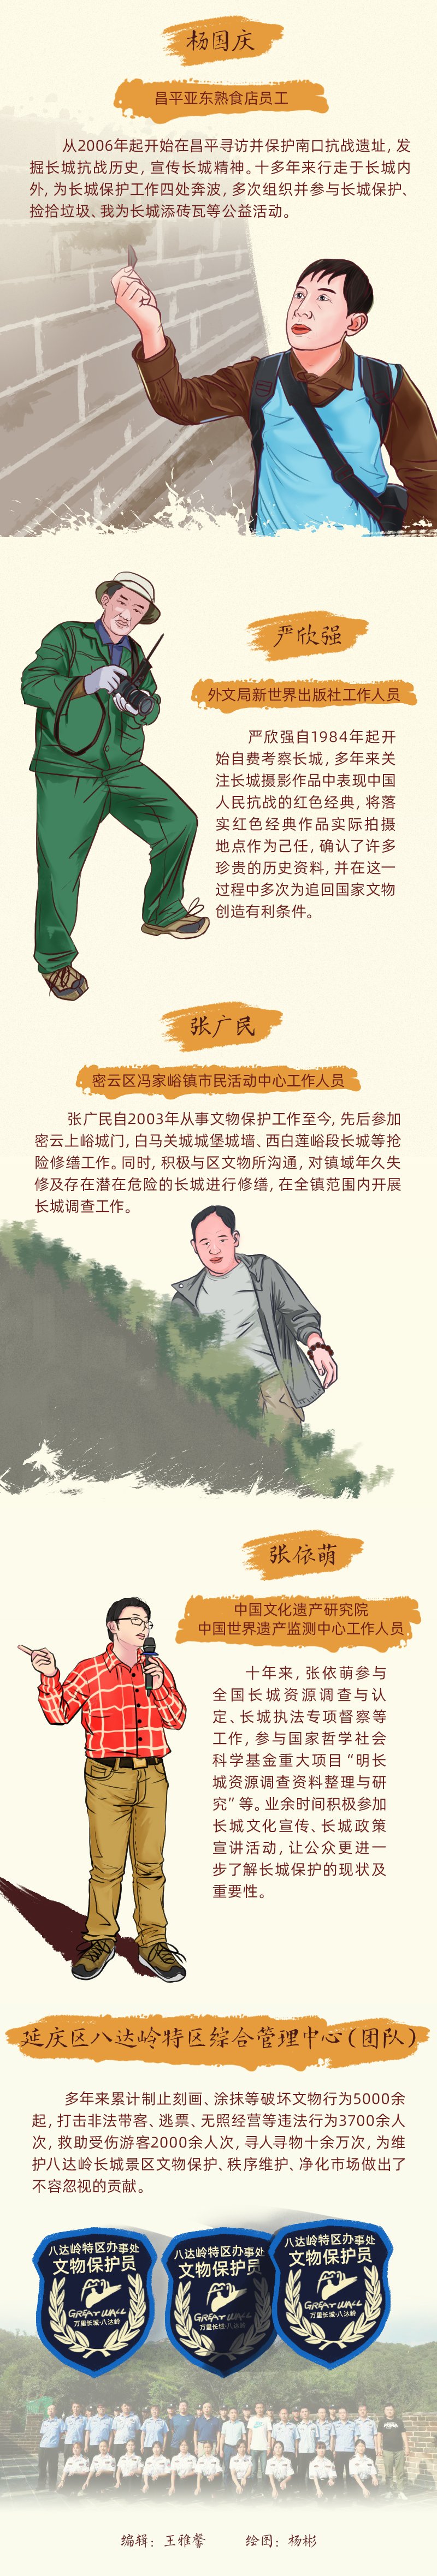 【手绘长图】长城文化带上的北京最美文物守护人